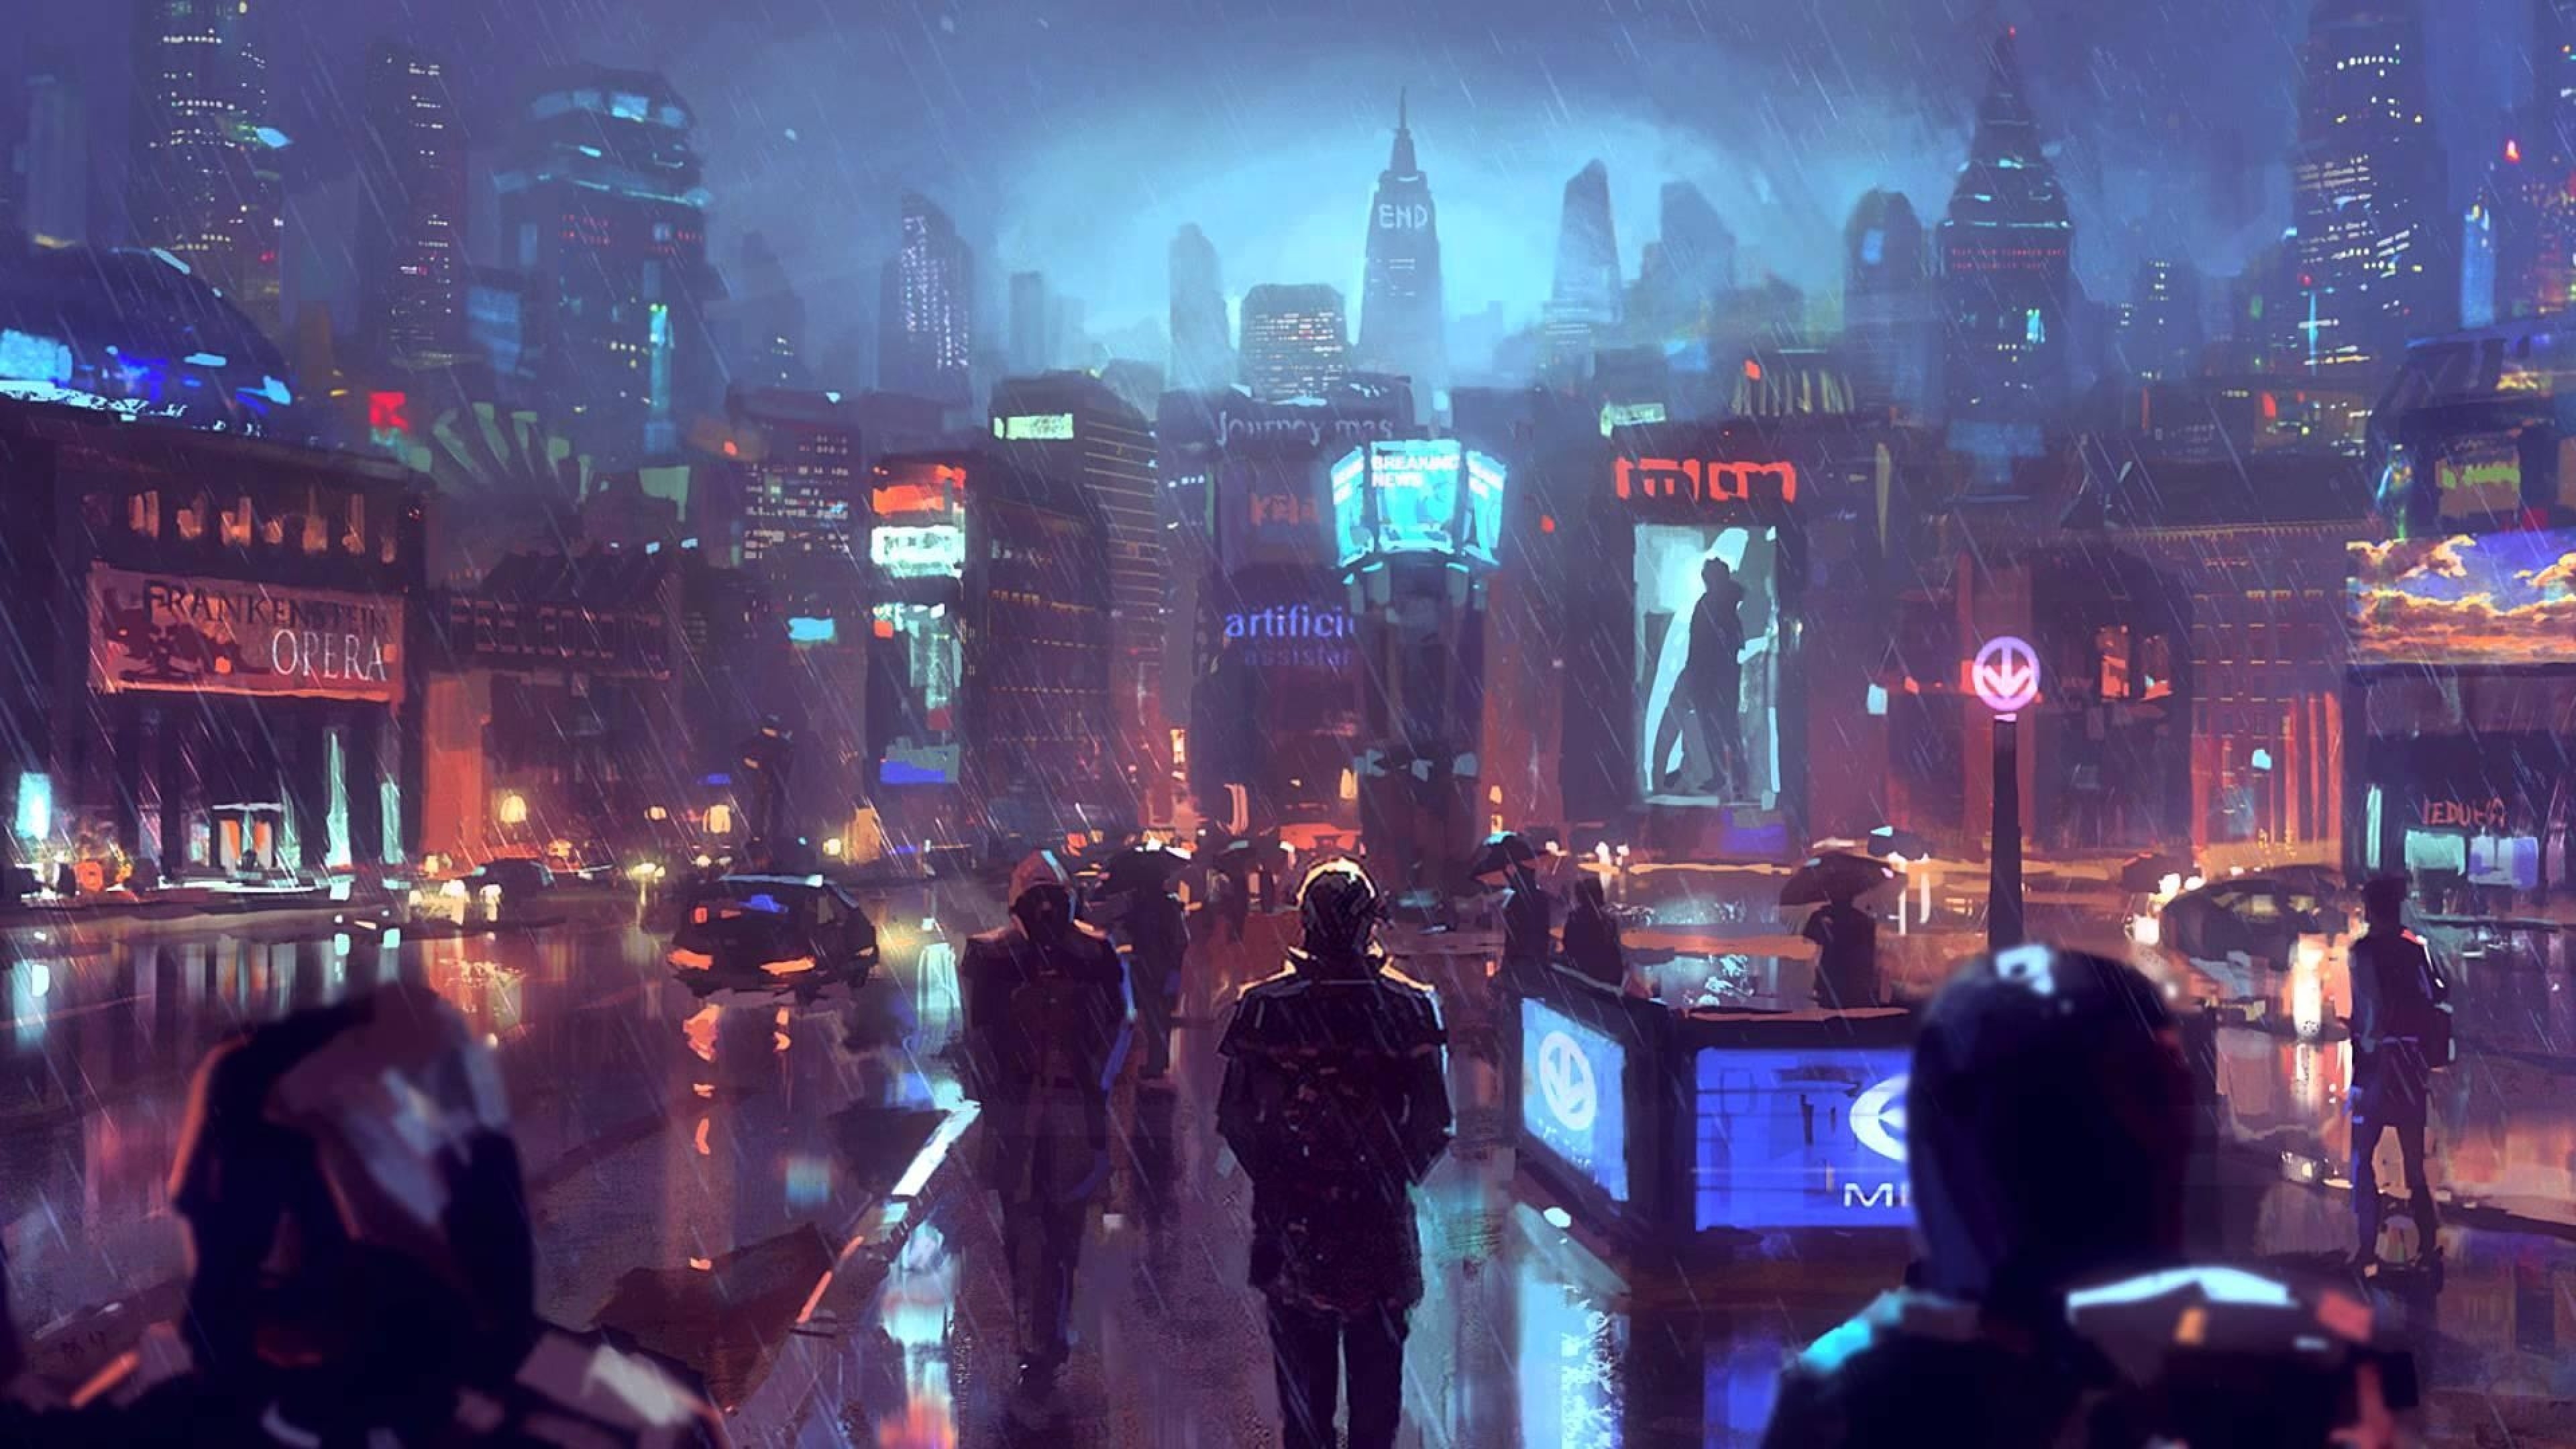 Cyberpunk City, Sci-fi, Raining, People, Skyscrapers - Cyberpunk Hd - HD Wallpaper 